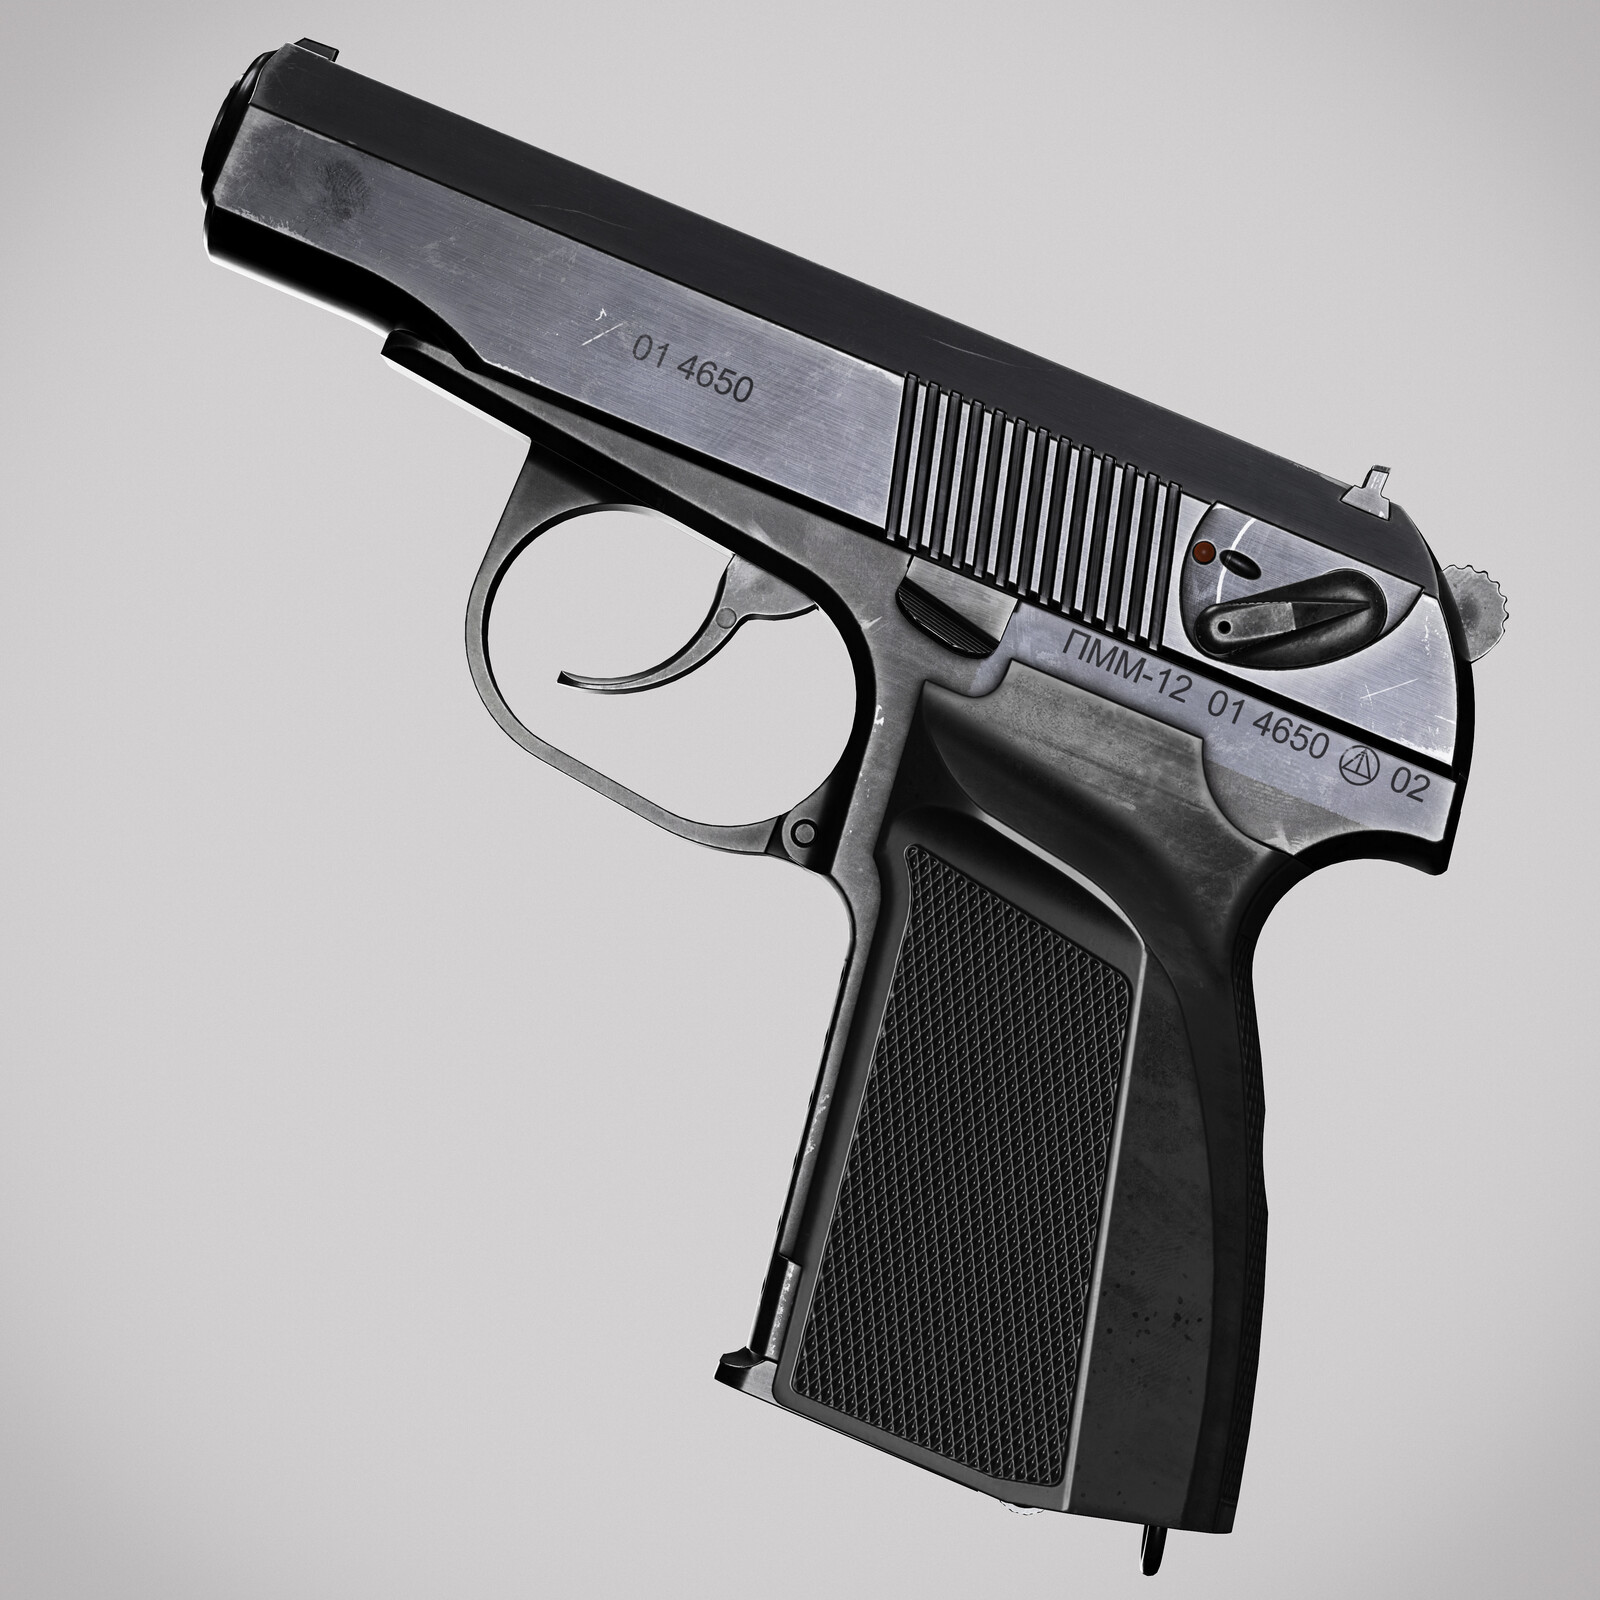 PMM-12 (Modernized Makarov pistol)